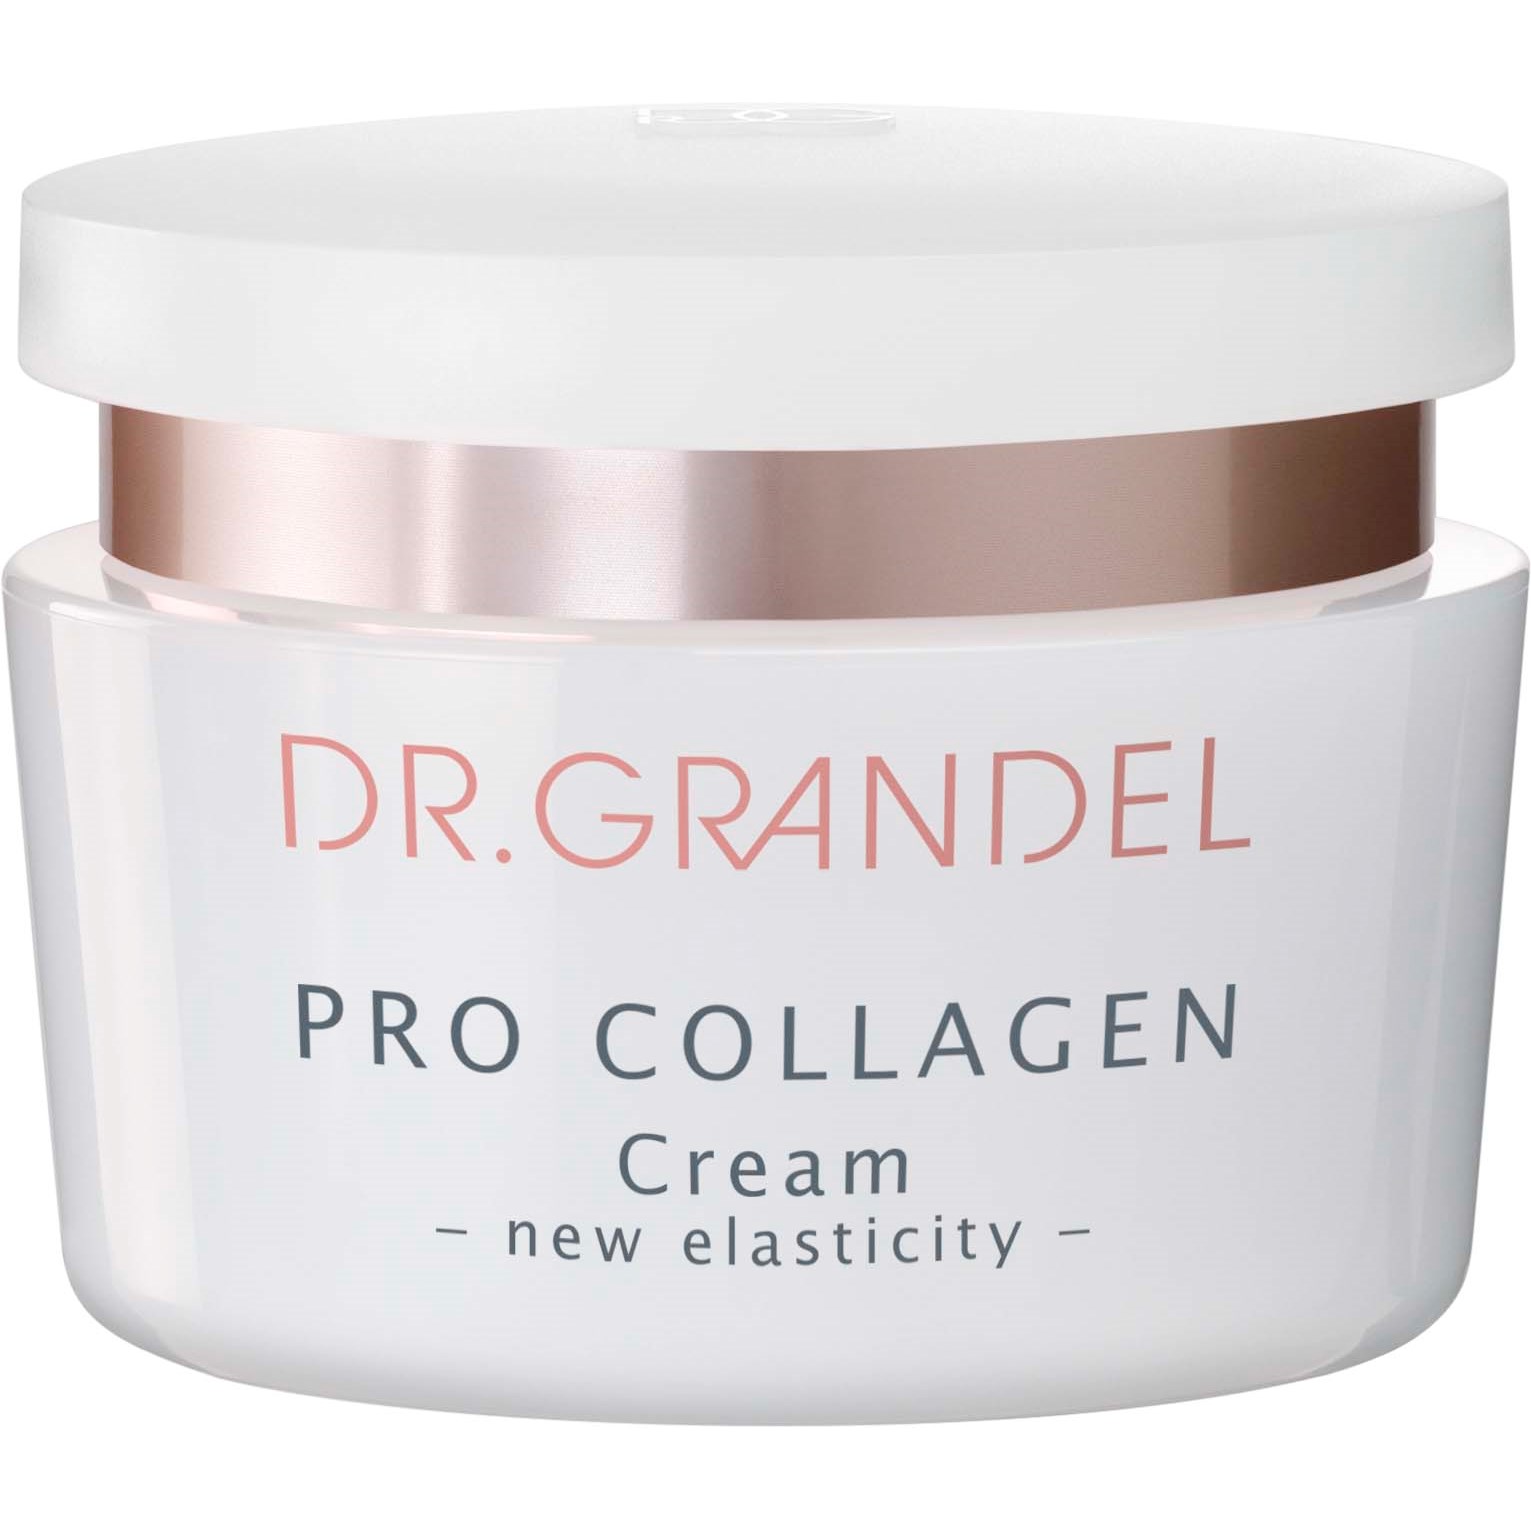 Dr. Grandel Pro Collagen Cream 50 ml